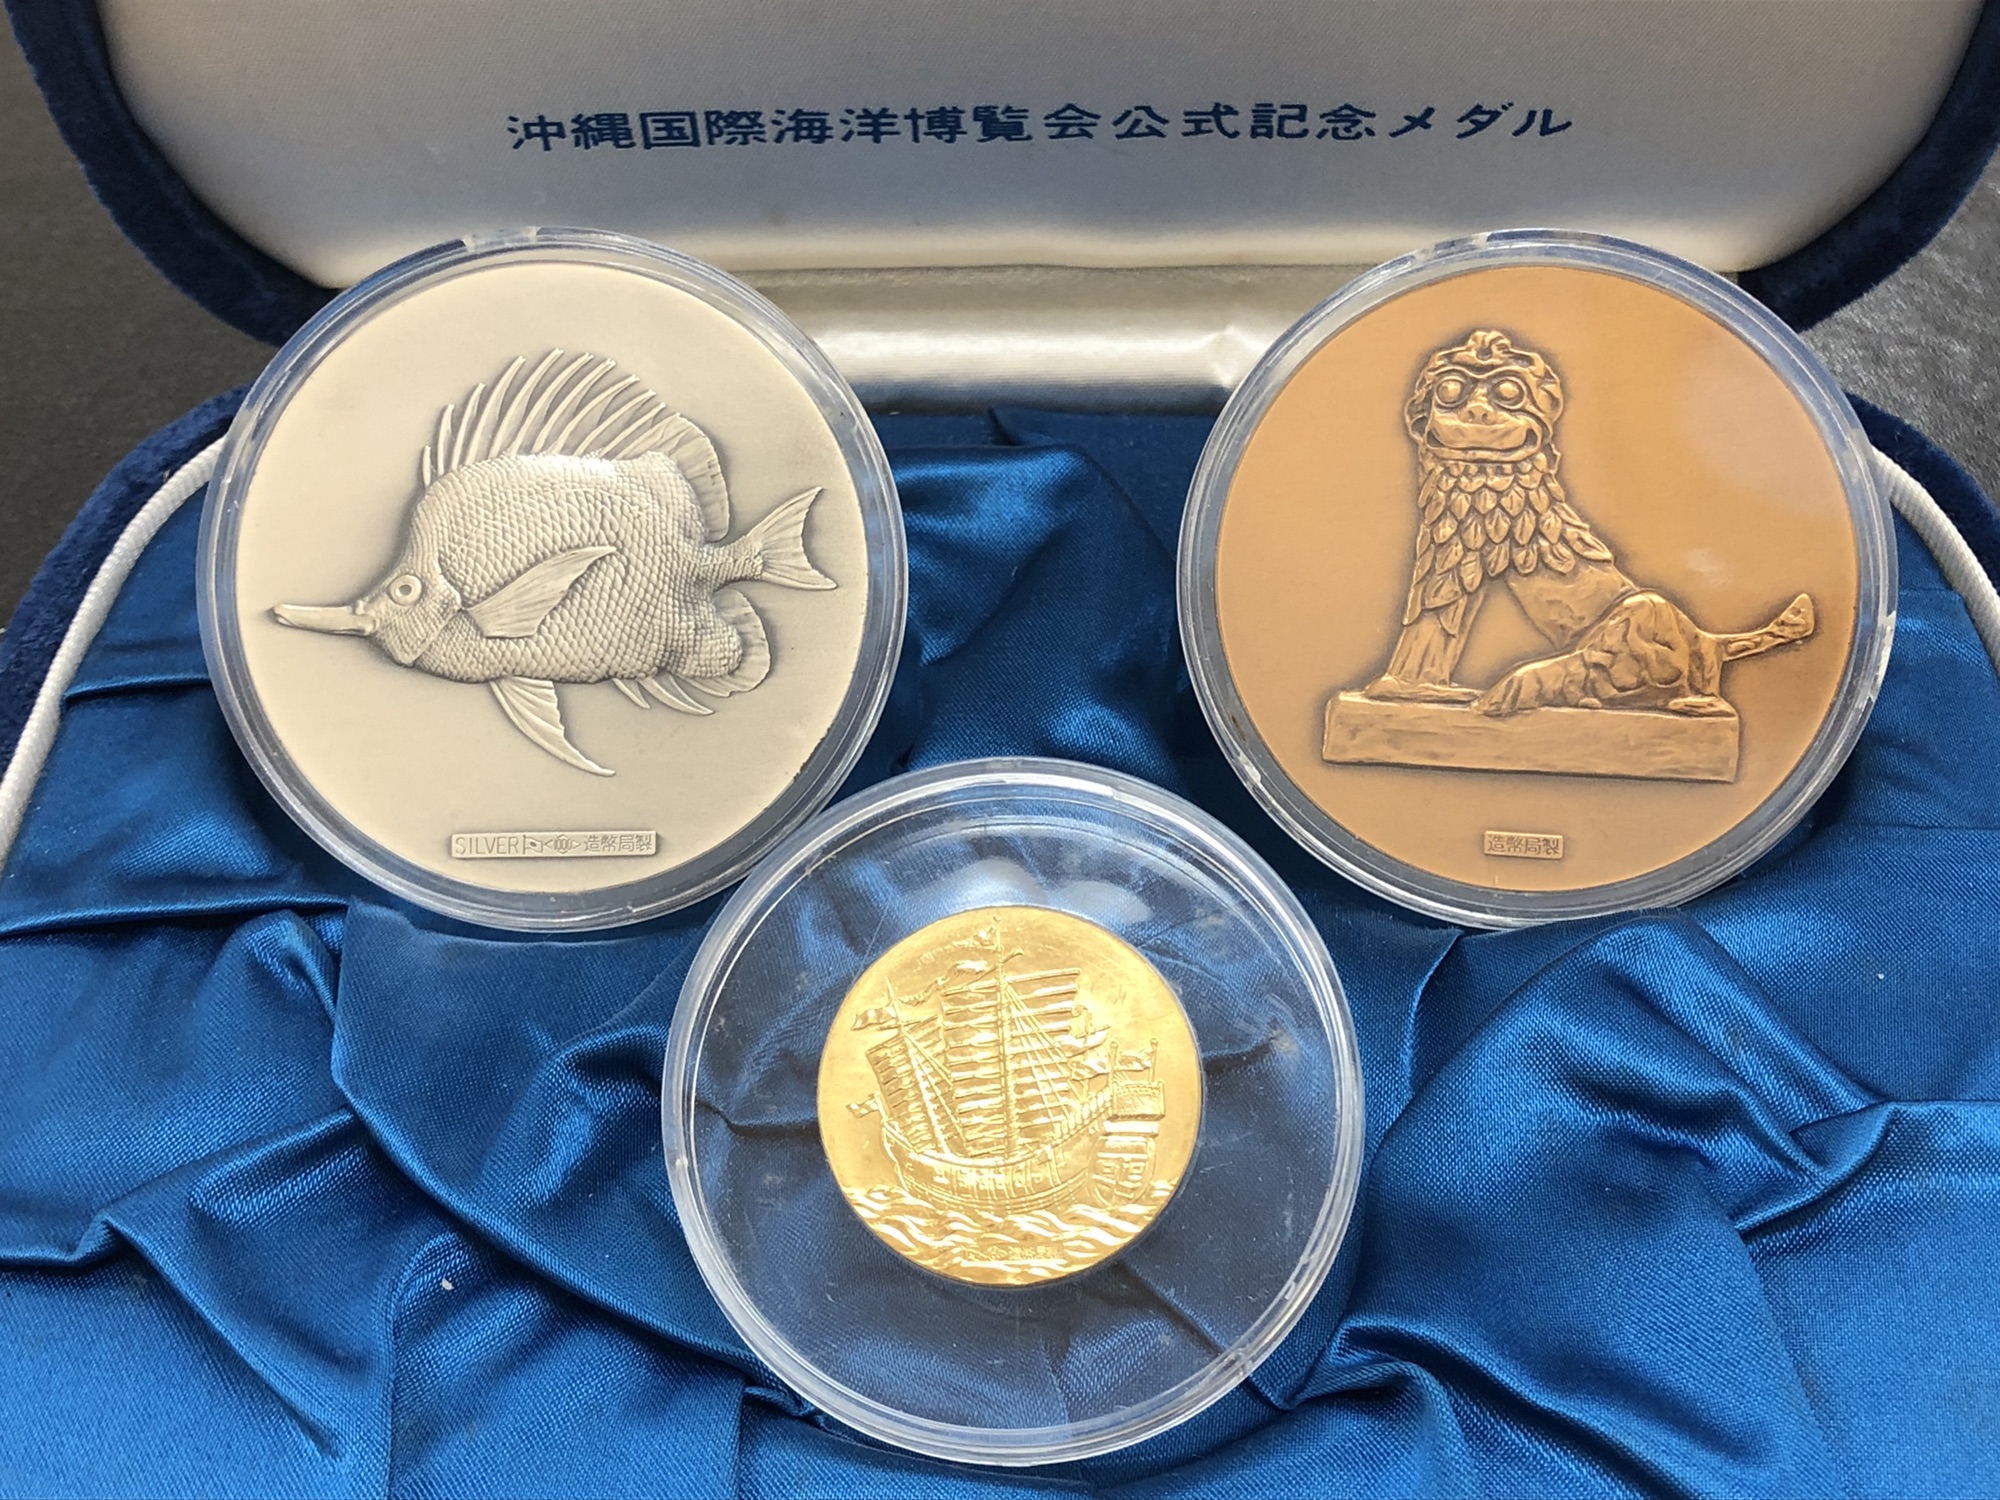 EXPO'75 沖縄国際海洋博覧会 公式記念メダル』をお買取させていただき 